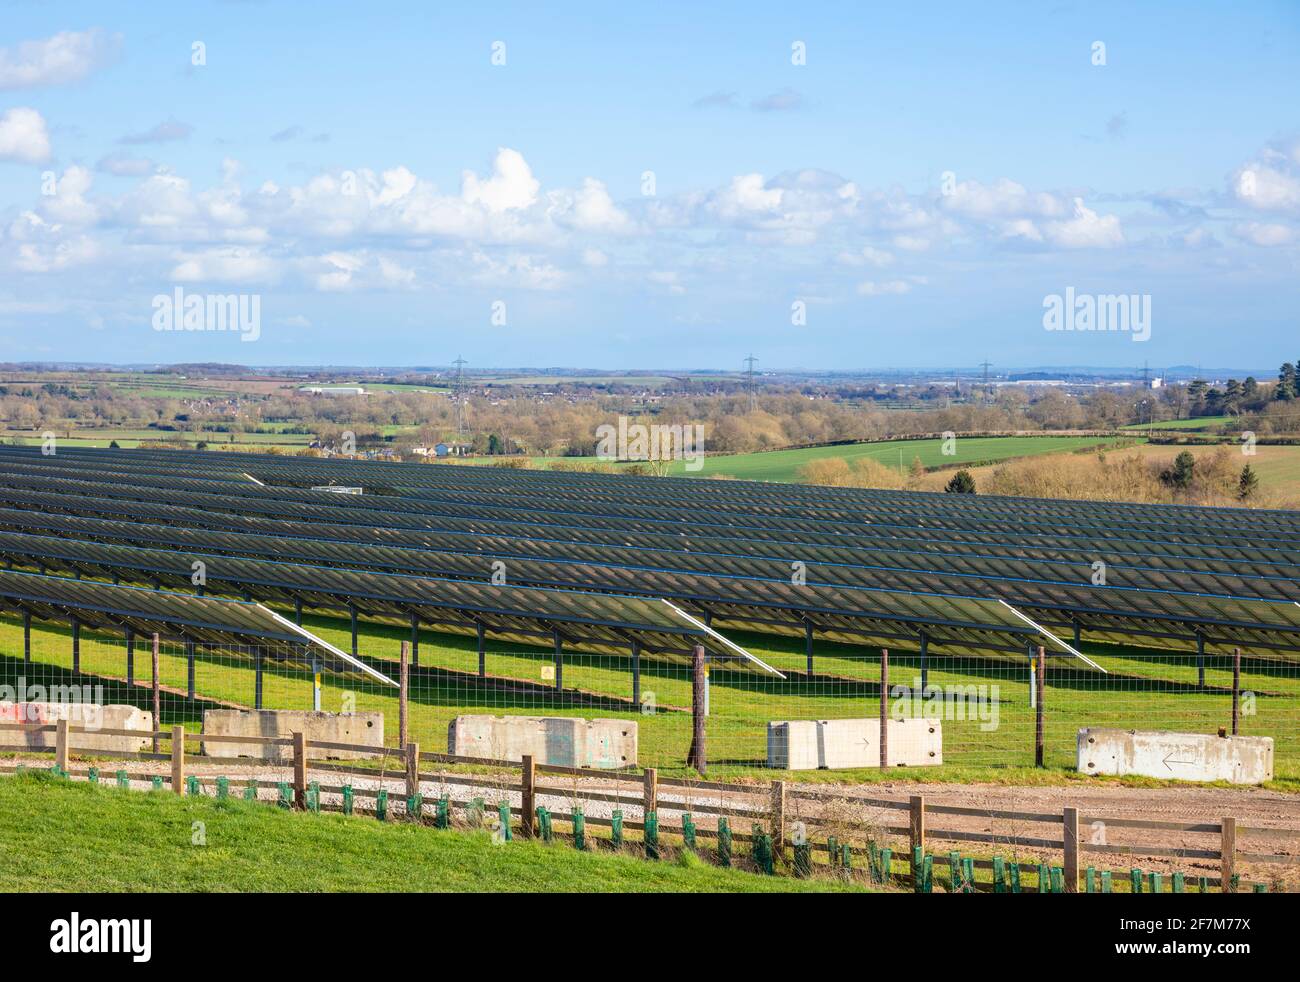 Un panneau solaire de panneaux solaires dans un photovoltaïque solaire (PV) système d'énergie solaire ferme royaume-uni East Midlands GB Royaume-Uni Europe Banque D'Images